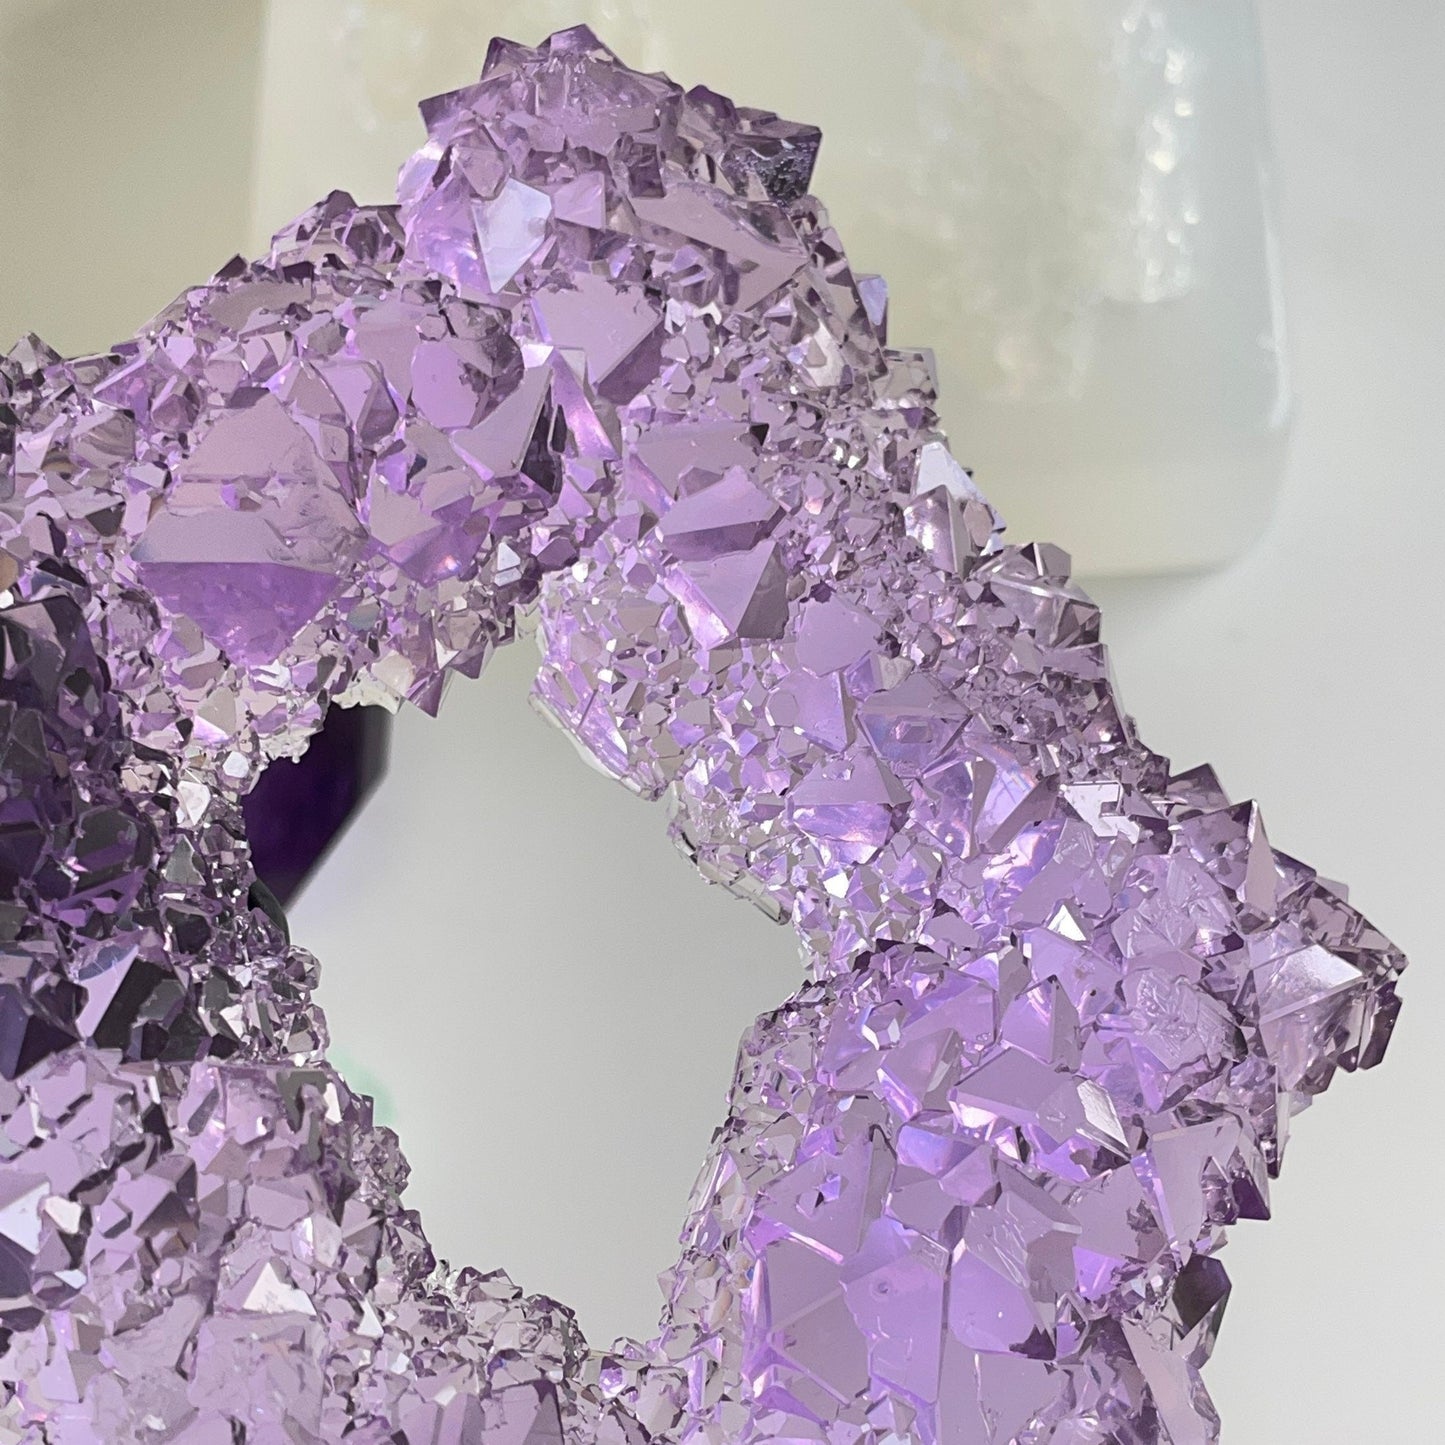 Luxuriöse Kristall-Silikonform: Hohe Qualität und große Größe